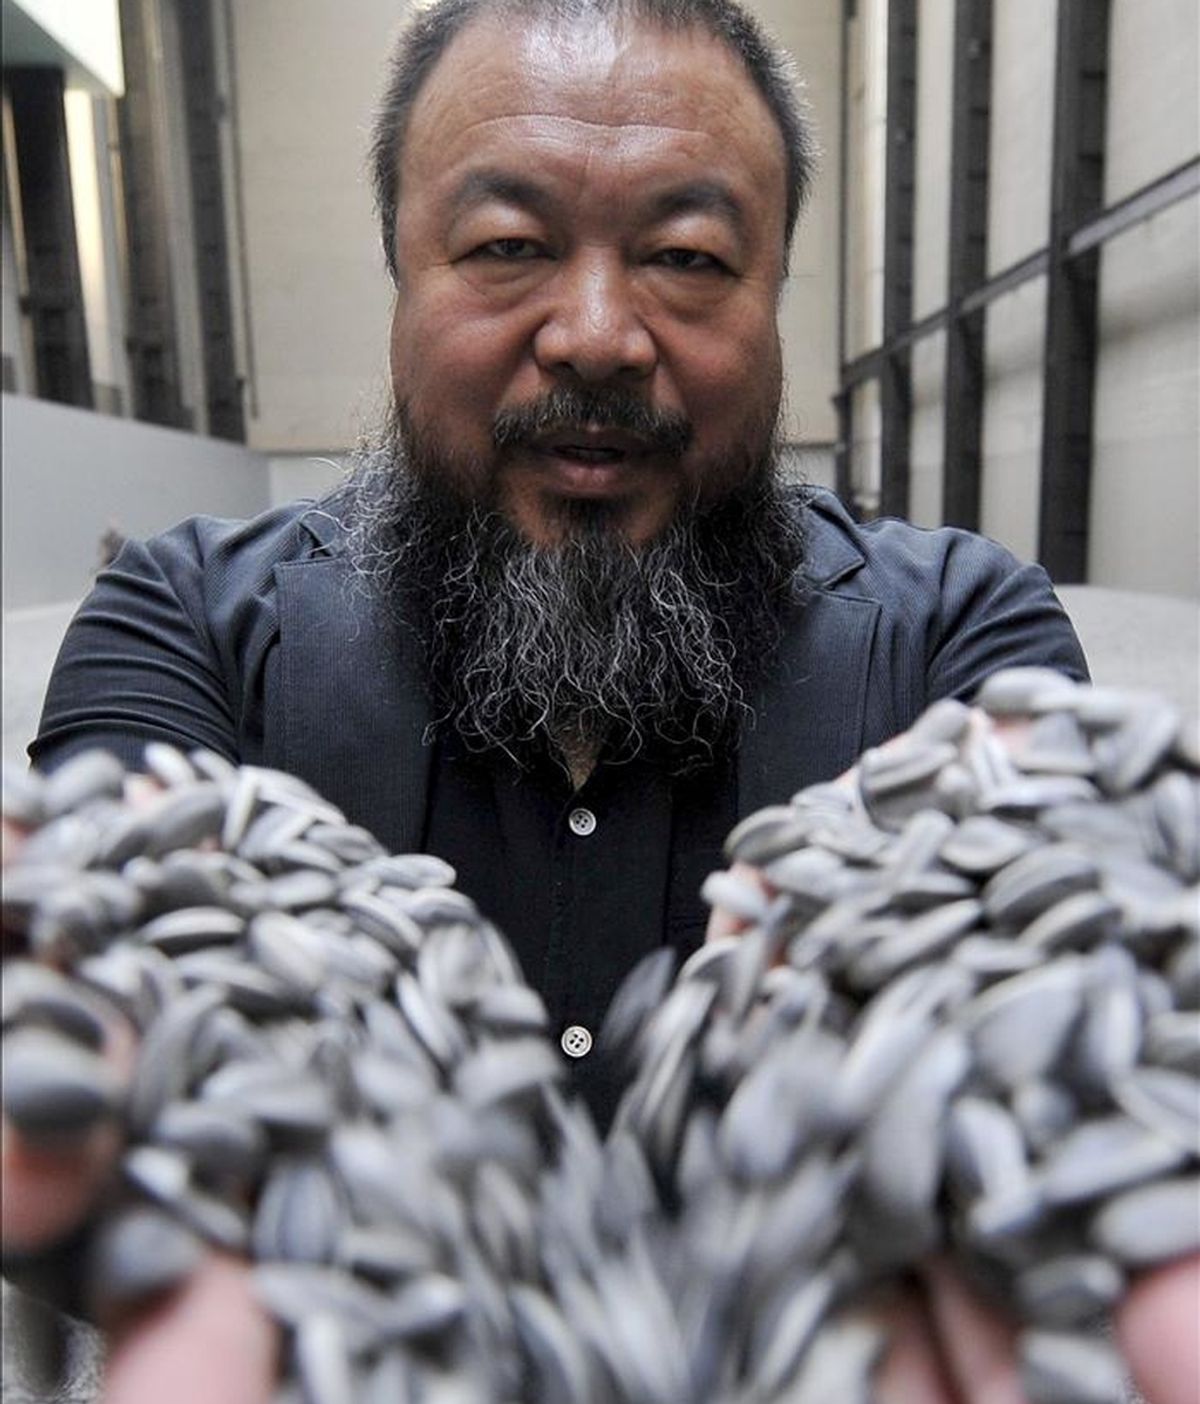 El renombrado artista chino Ai Weiwei sostiene un puñado de semillas de girasol de porcelana, durante la inauguración de su exhibición "Sunflower Seeds" en el Museo Tate Modern de Londres (Reino Unido), el 11 de octubre de 2010. EFE/Archivo